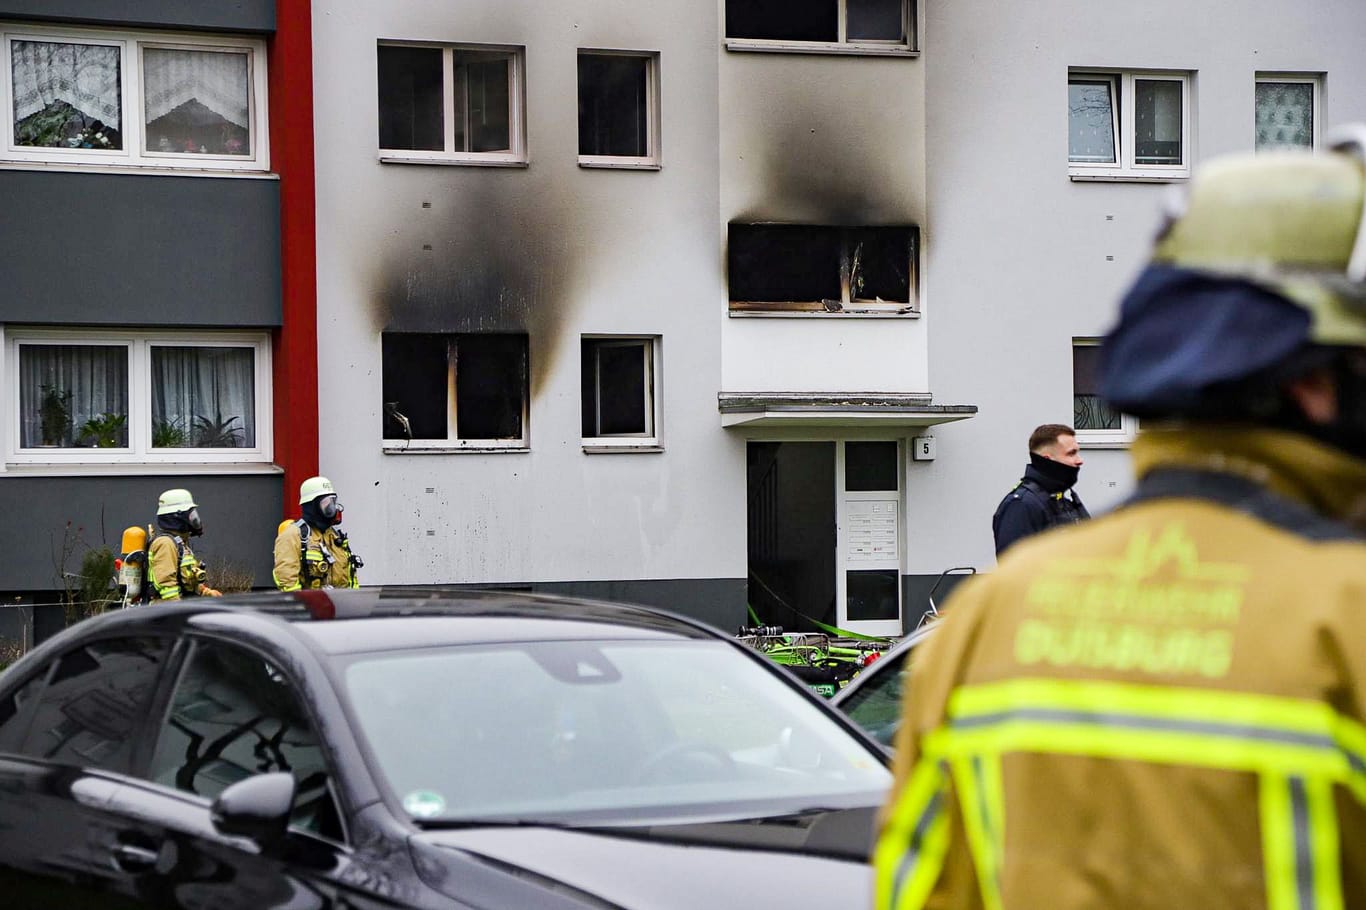 Die Feuerwehr Duisburg ist am Freitagmorgen zu einem Brand an der Beethovenstraße ausgerückt. Bei dem Brand wurde eine Person tödlich verletzt. Mehrere weitere ebenfalls verletzt.